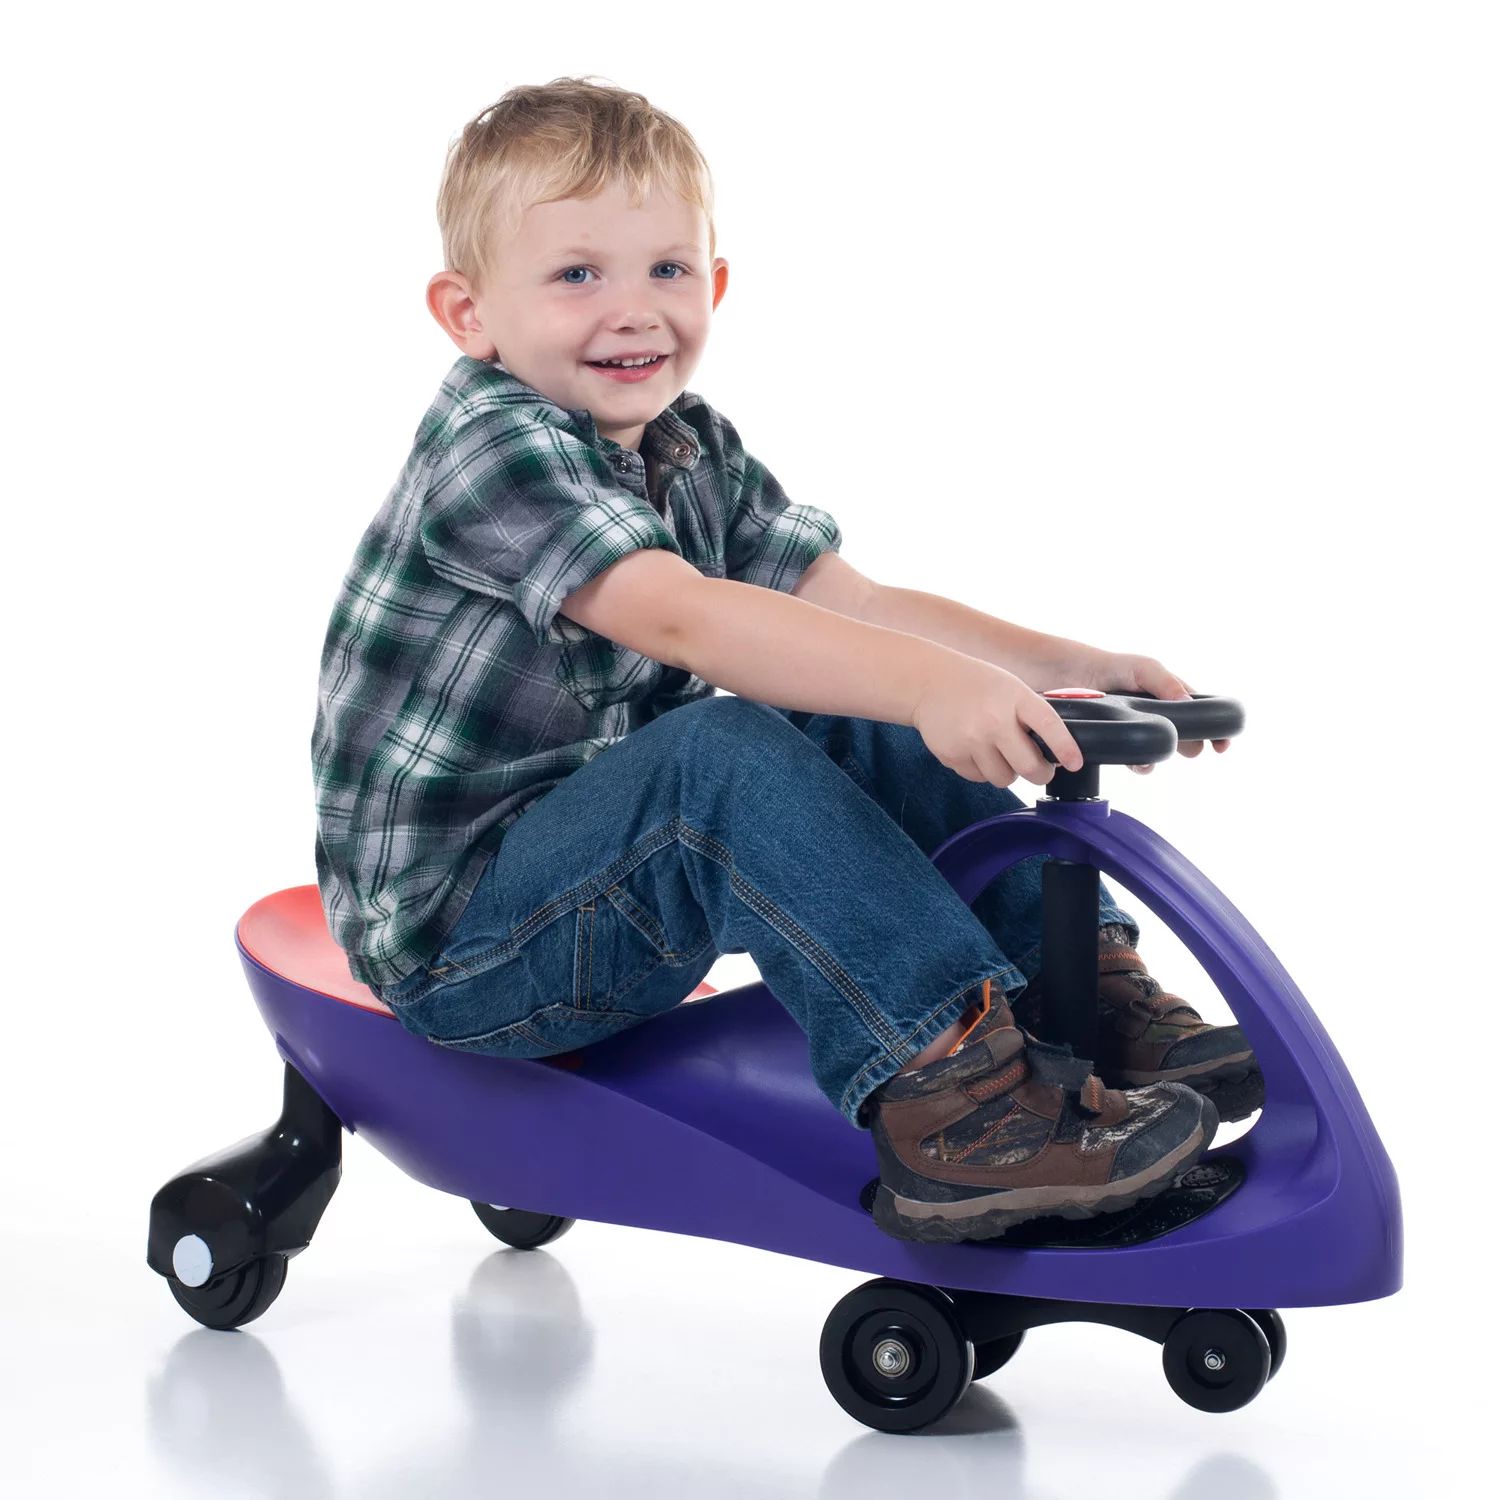 Машинка Lil' Rider для езды на Wiggle Lil' Rider, фиолетовый цена и фото